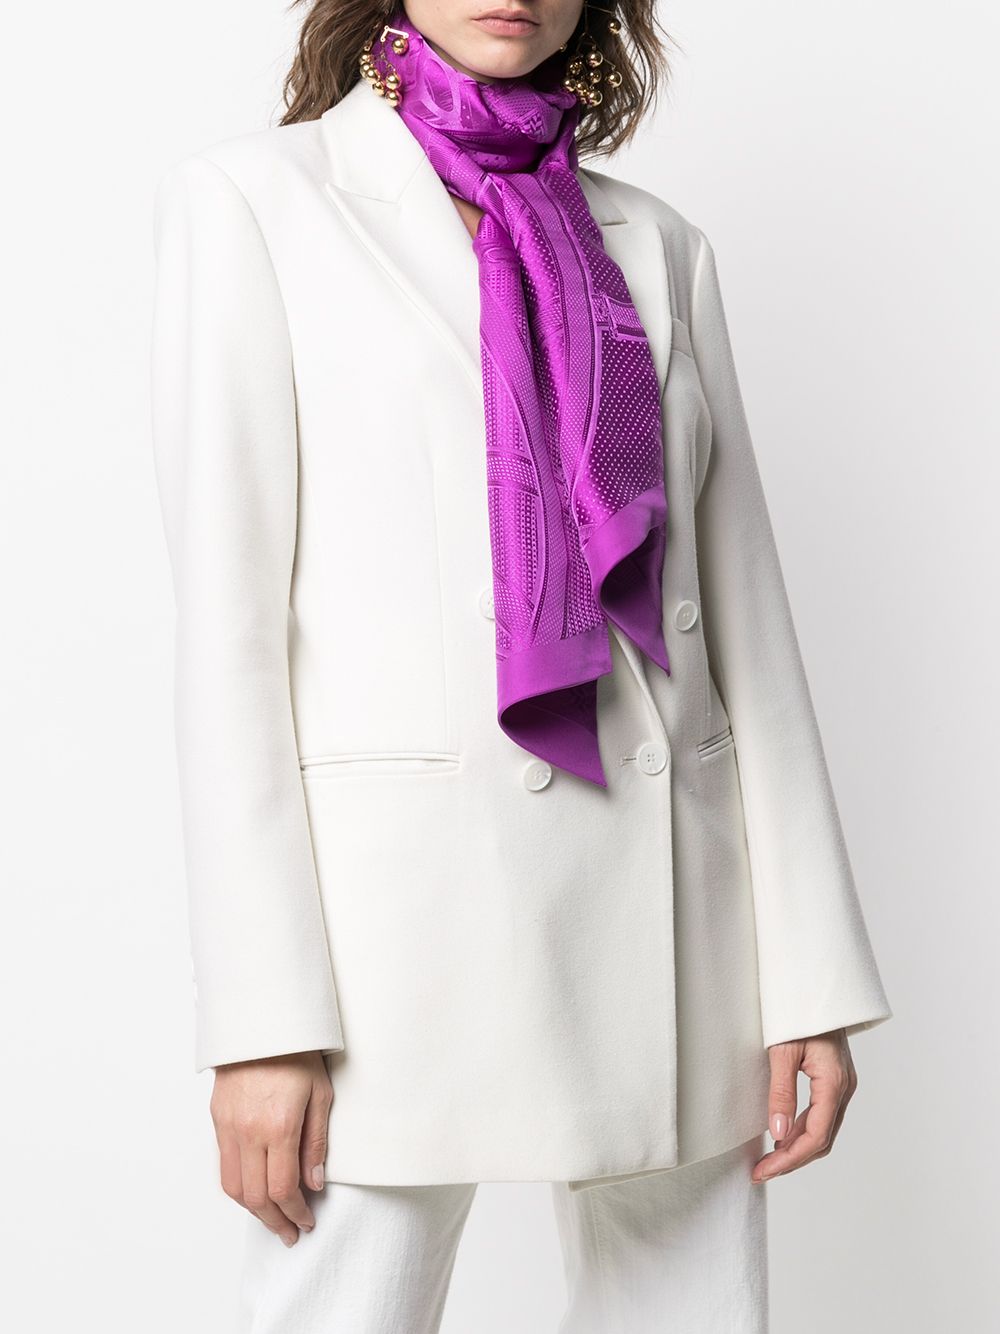 фото Hermès платок 2010-х годов